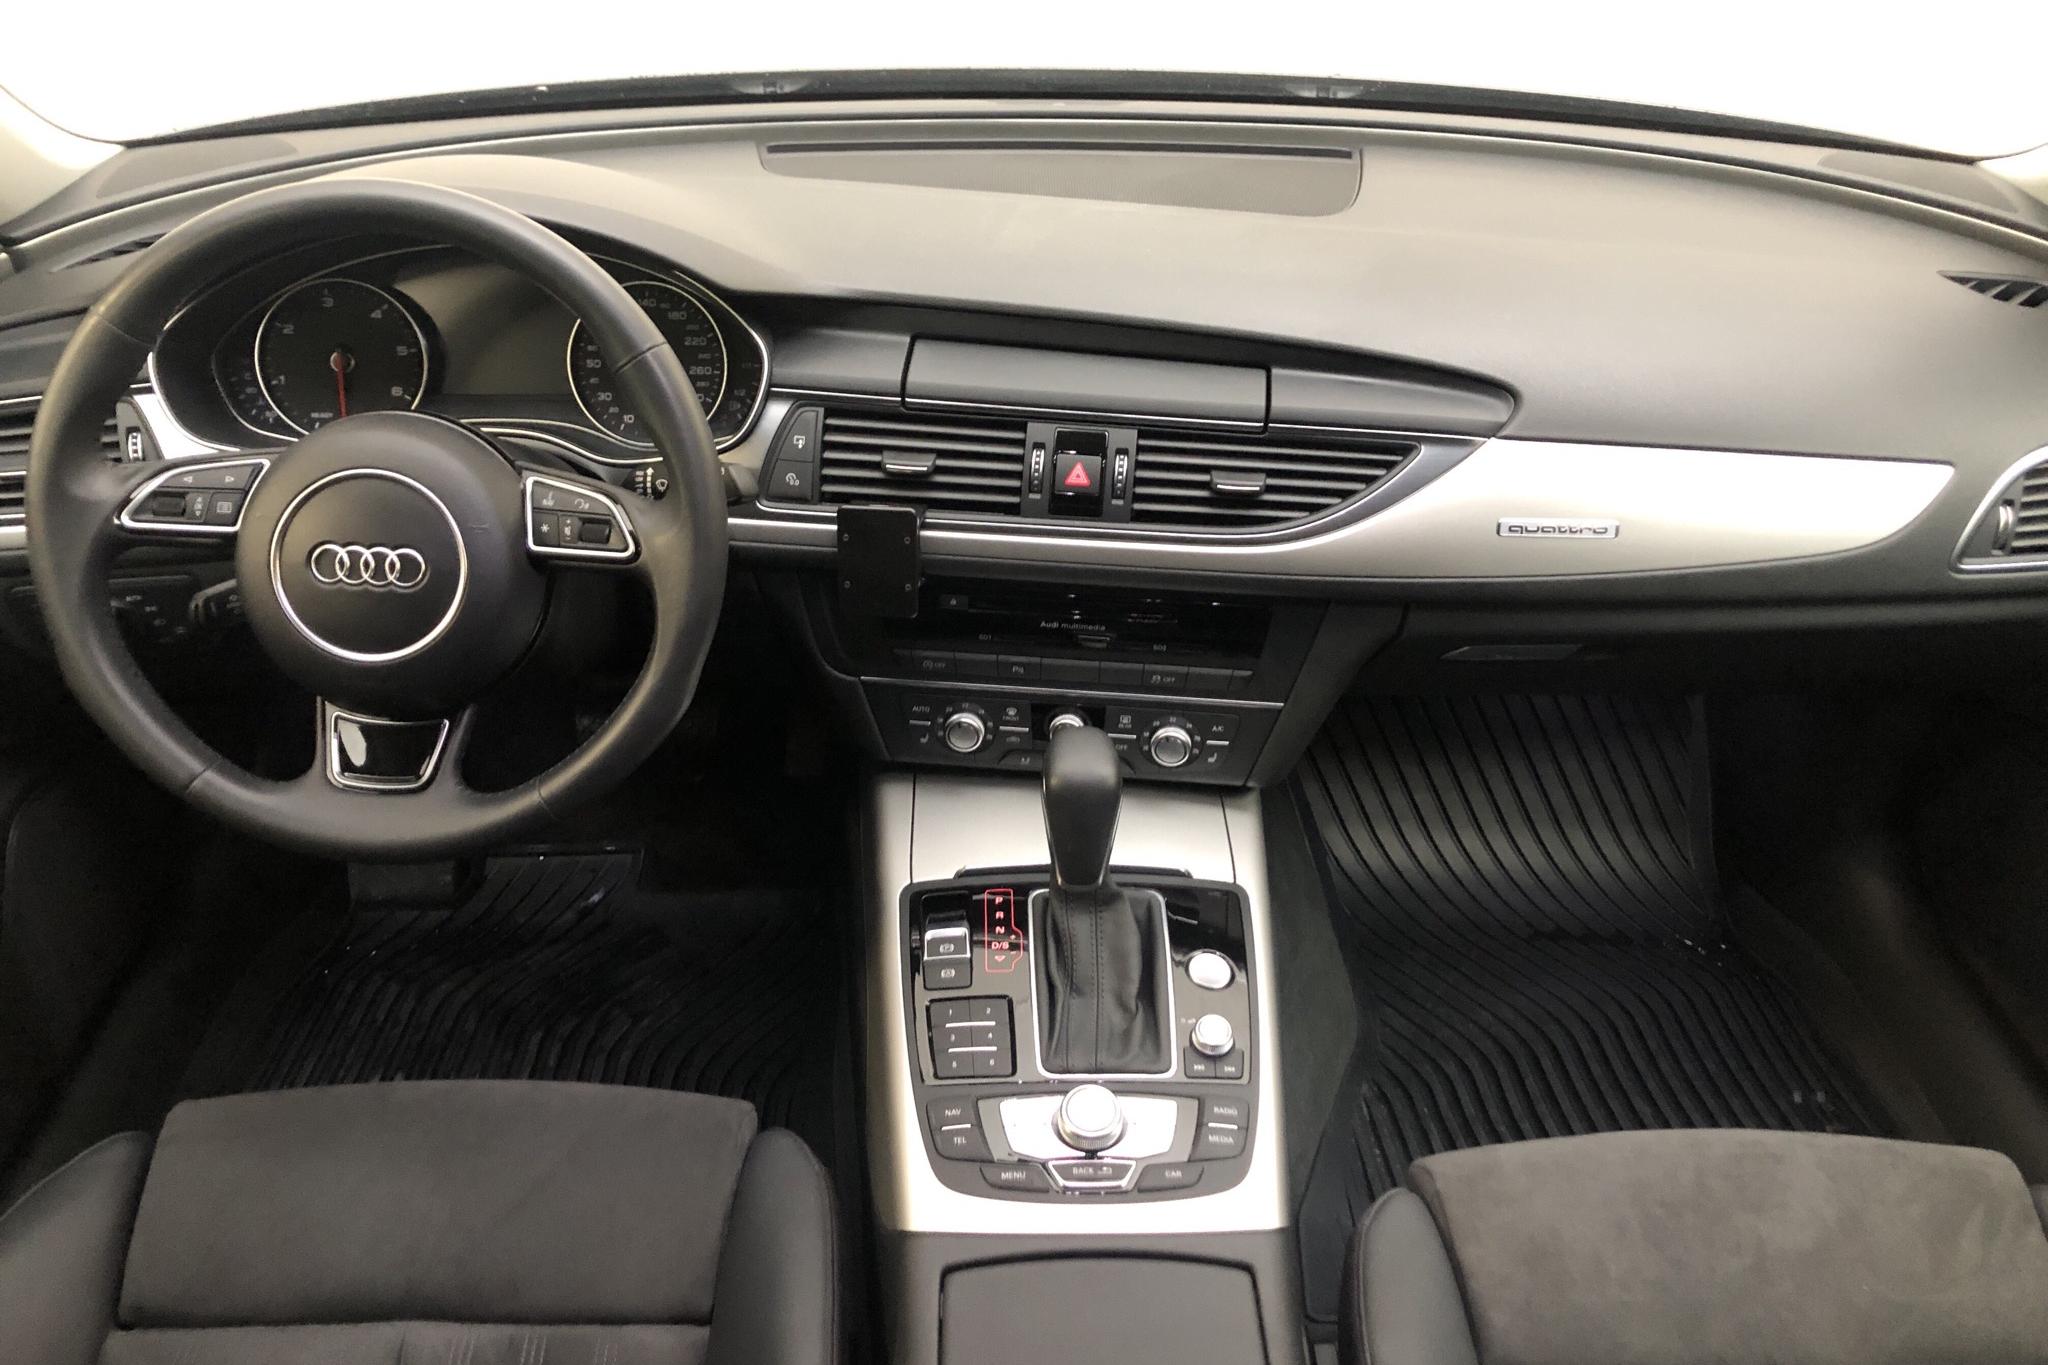 Audi A6 2.0 TDI Avant quattro (190hk) - 7 880 mil - Automat - svart - 2018